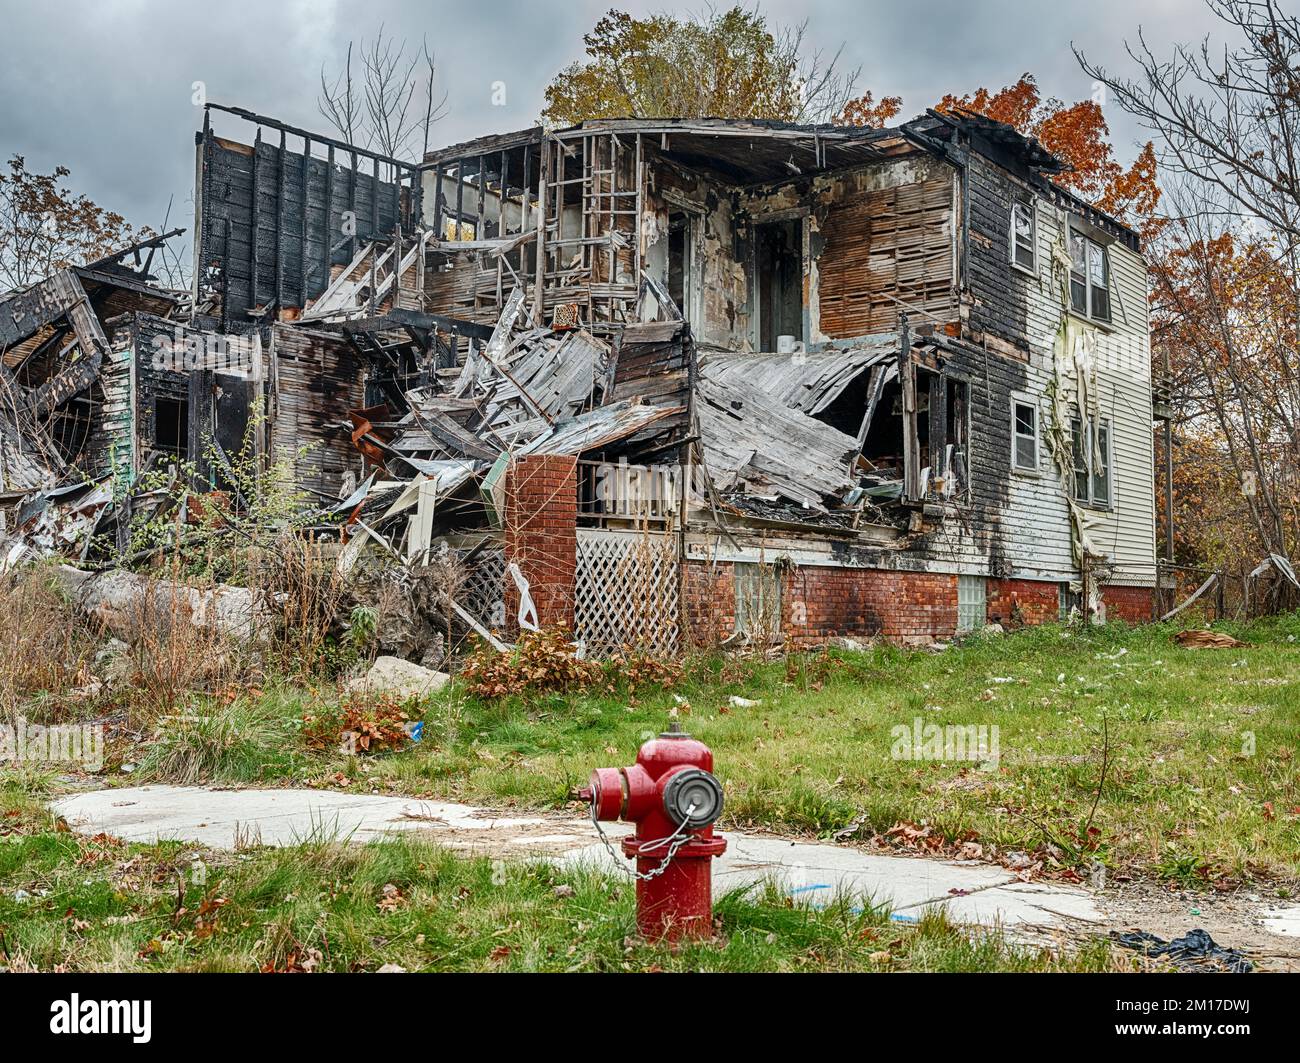 Un poteau incendie rouge se trouve devant une maison brûlée et semi-démolie dans un quartier de Detroit, Michigan. Banque D'Images